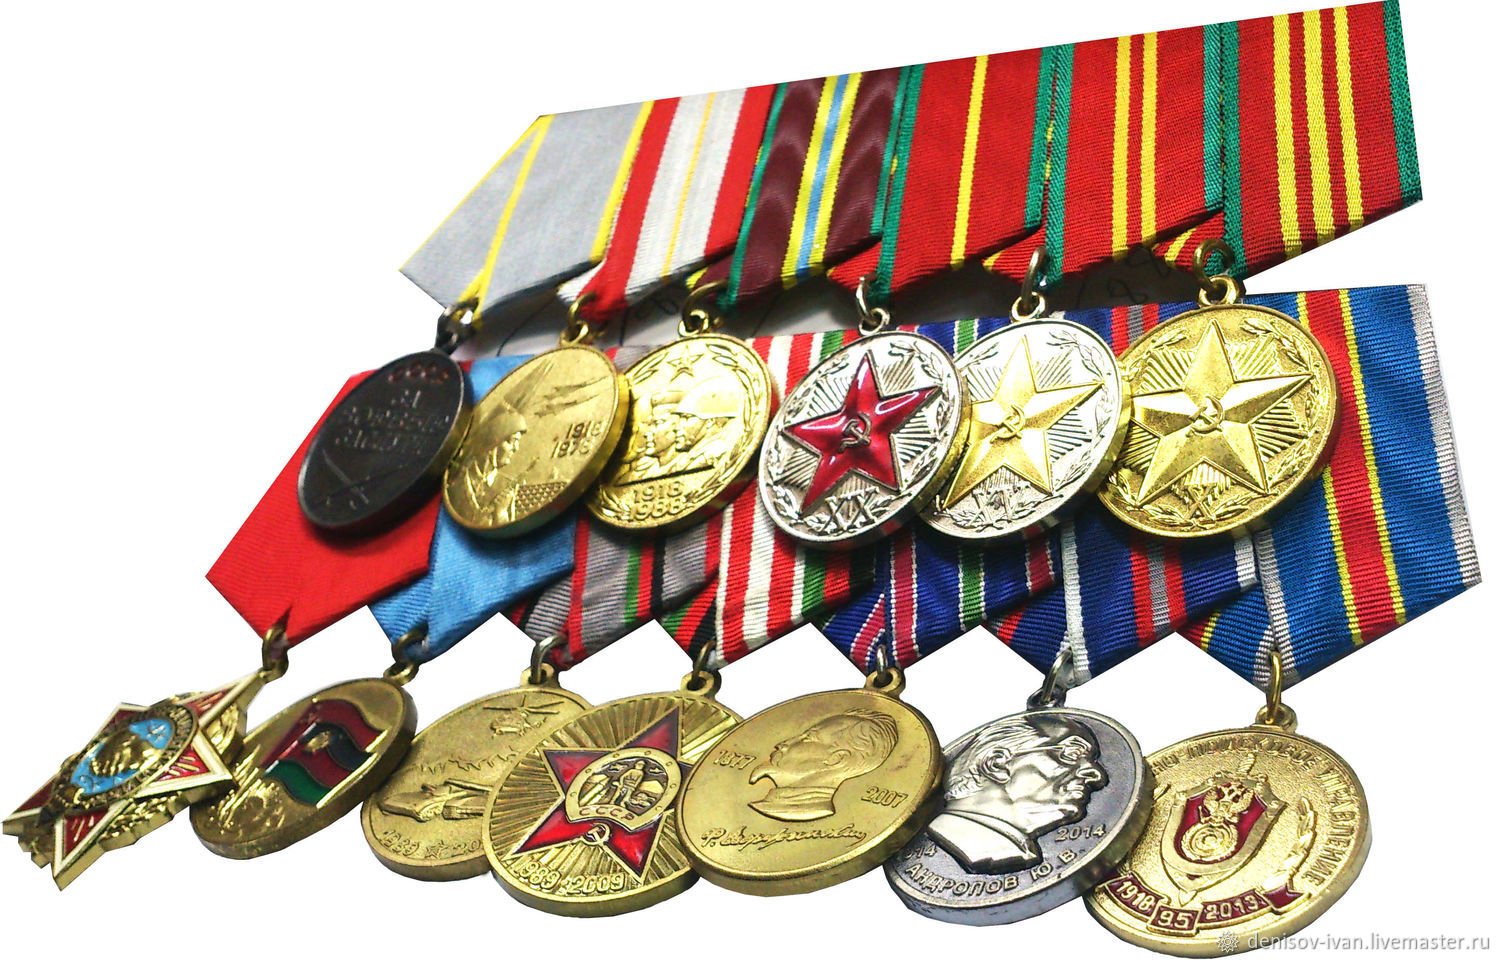 Год учреждения медалей. Боевые медали. Советские медали. Военные ордена и медали. Армейские медали.